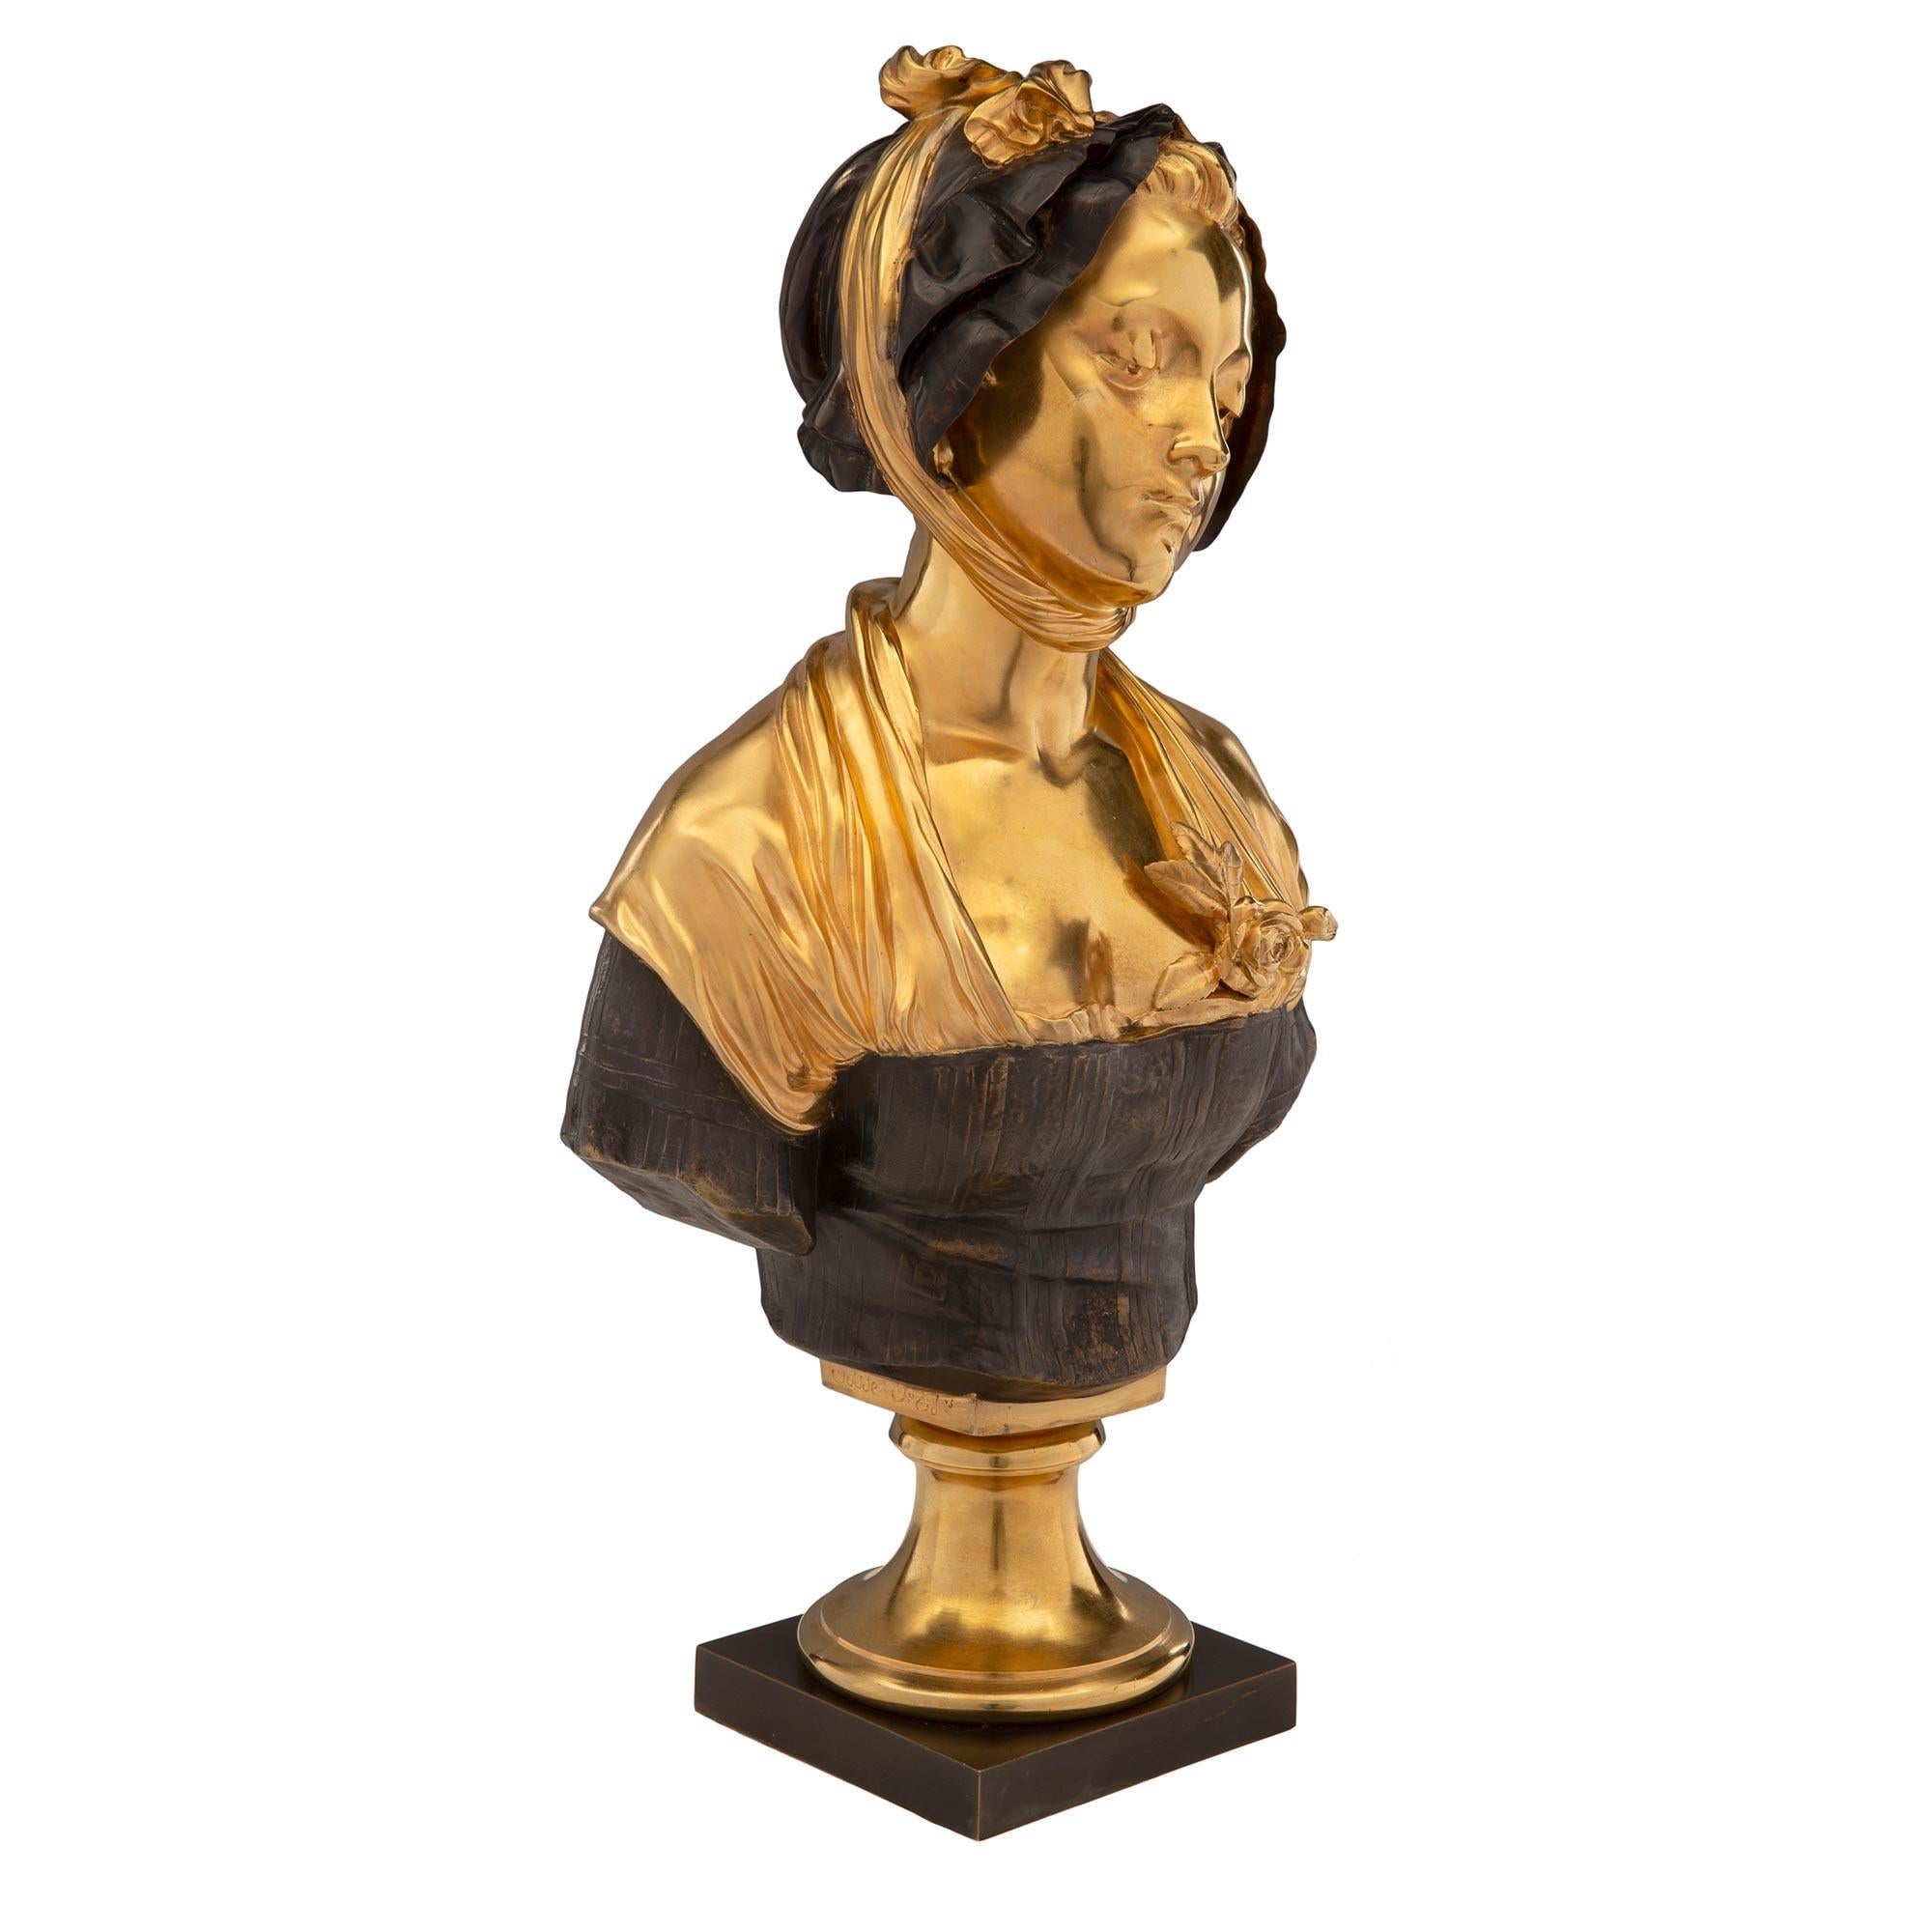 Charmant buste de jeune femme en bronze patiné et bronze doré du milieu du XIXe siècle, signé par Elie-Joseph Laurent. Le buste est surélevé par un piédestal carré en bronze patiné sous un socle circulaire en bronze doré. La jeune femme porte un